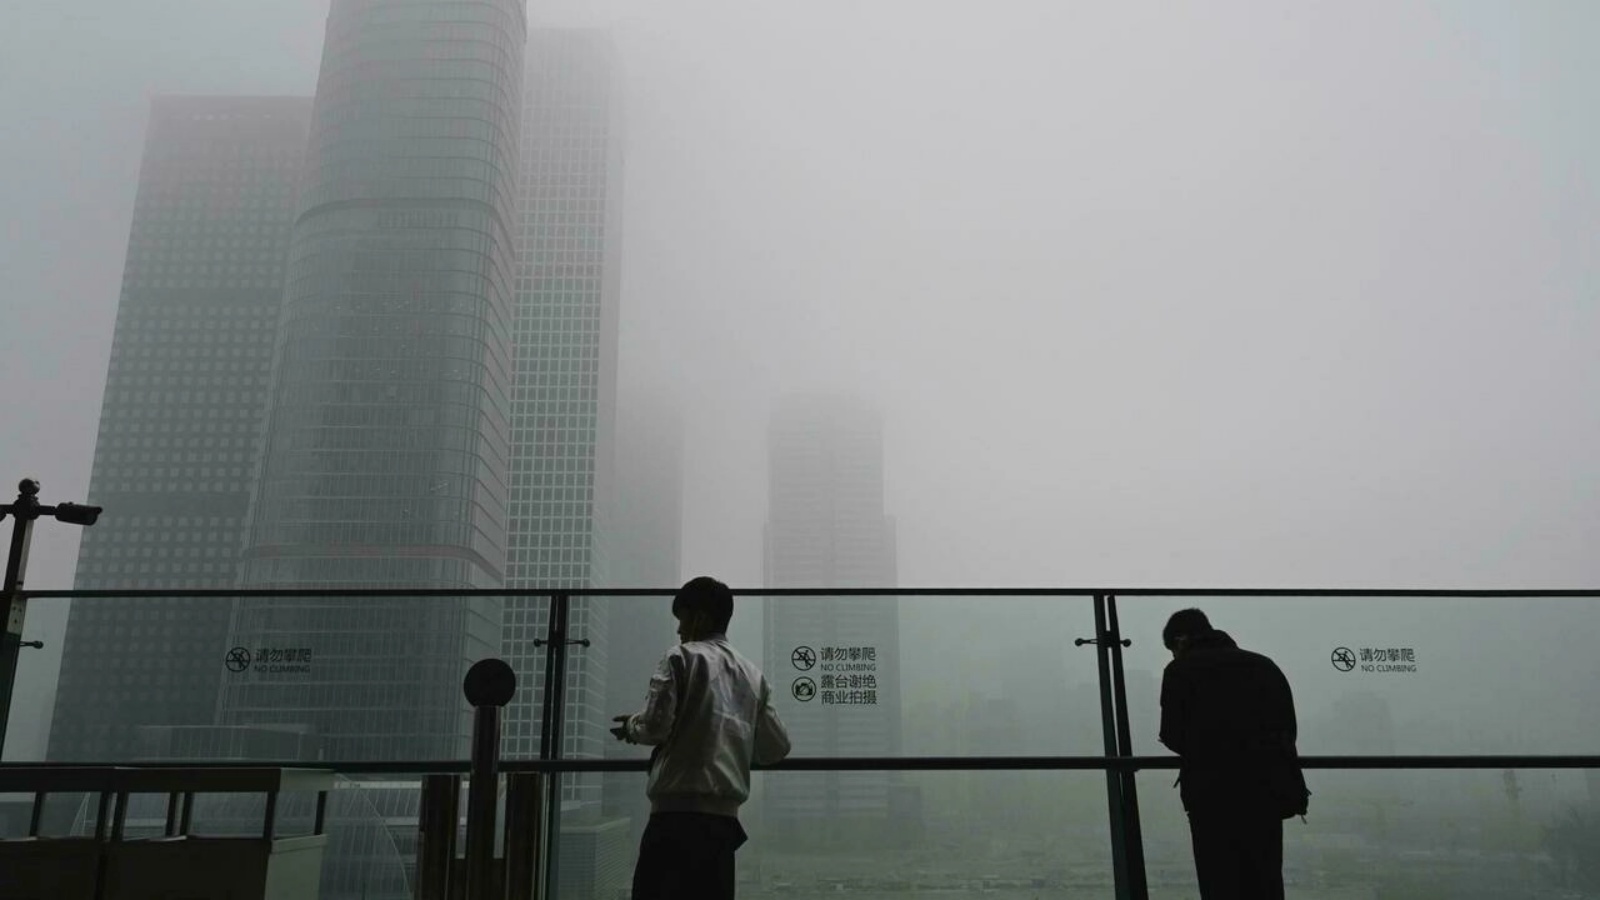 ضباب كثيف يغطي العاصمة الصينية بكين. الجمعة 5 تشرين الثاني/ نوفمبر2021.